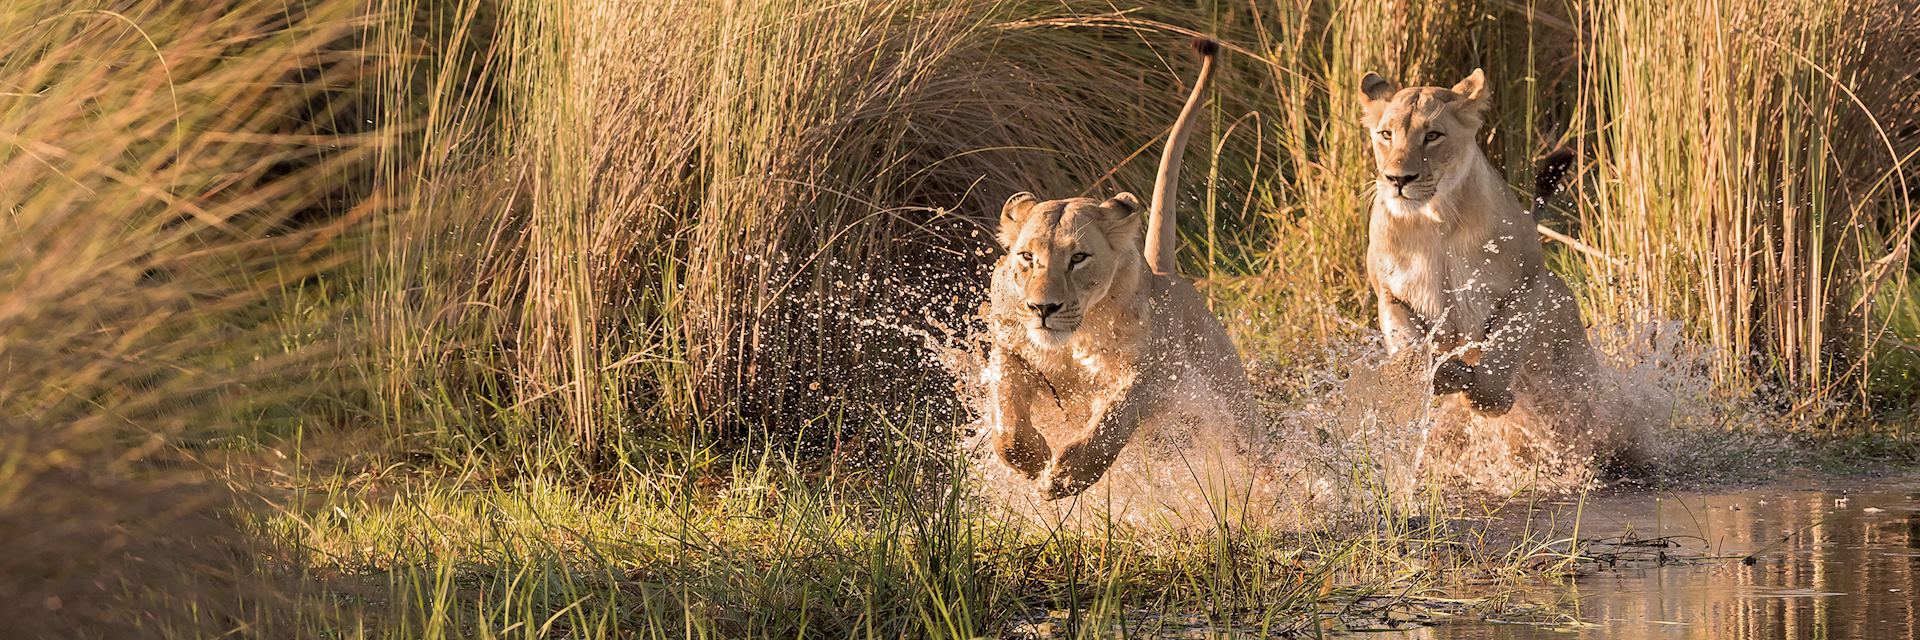 Lion in the Okavango Delta